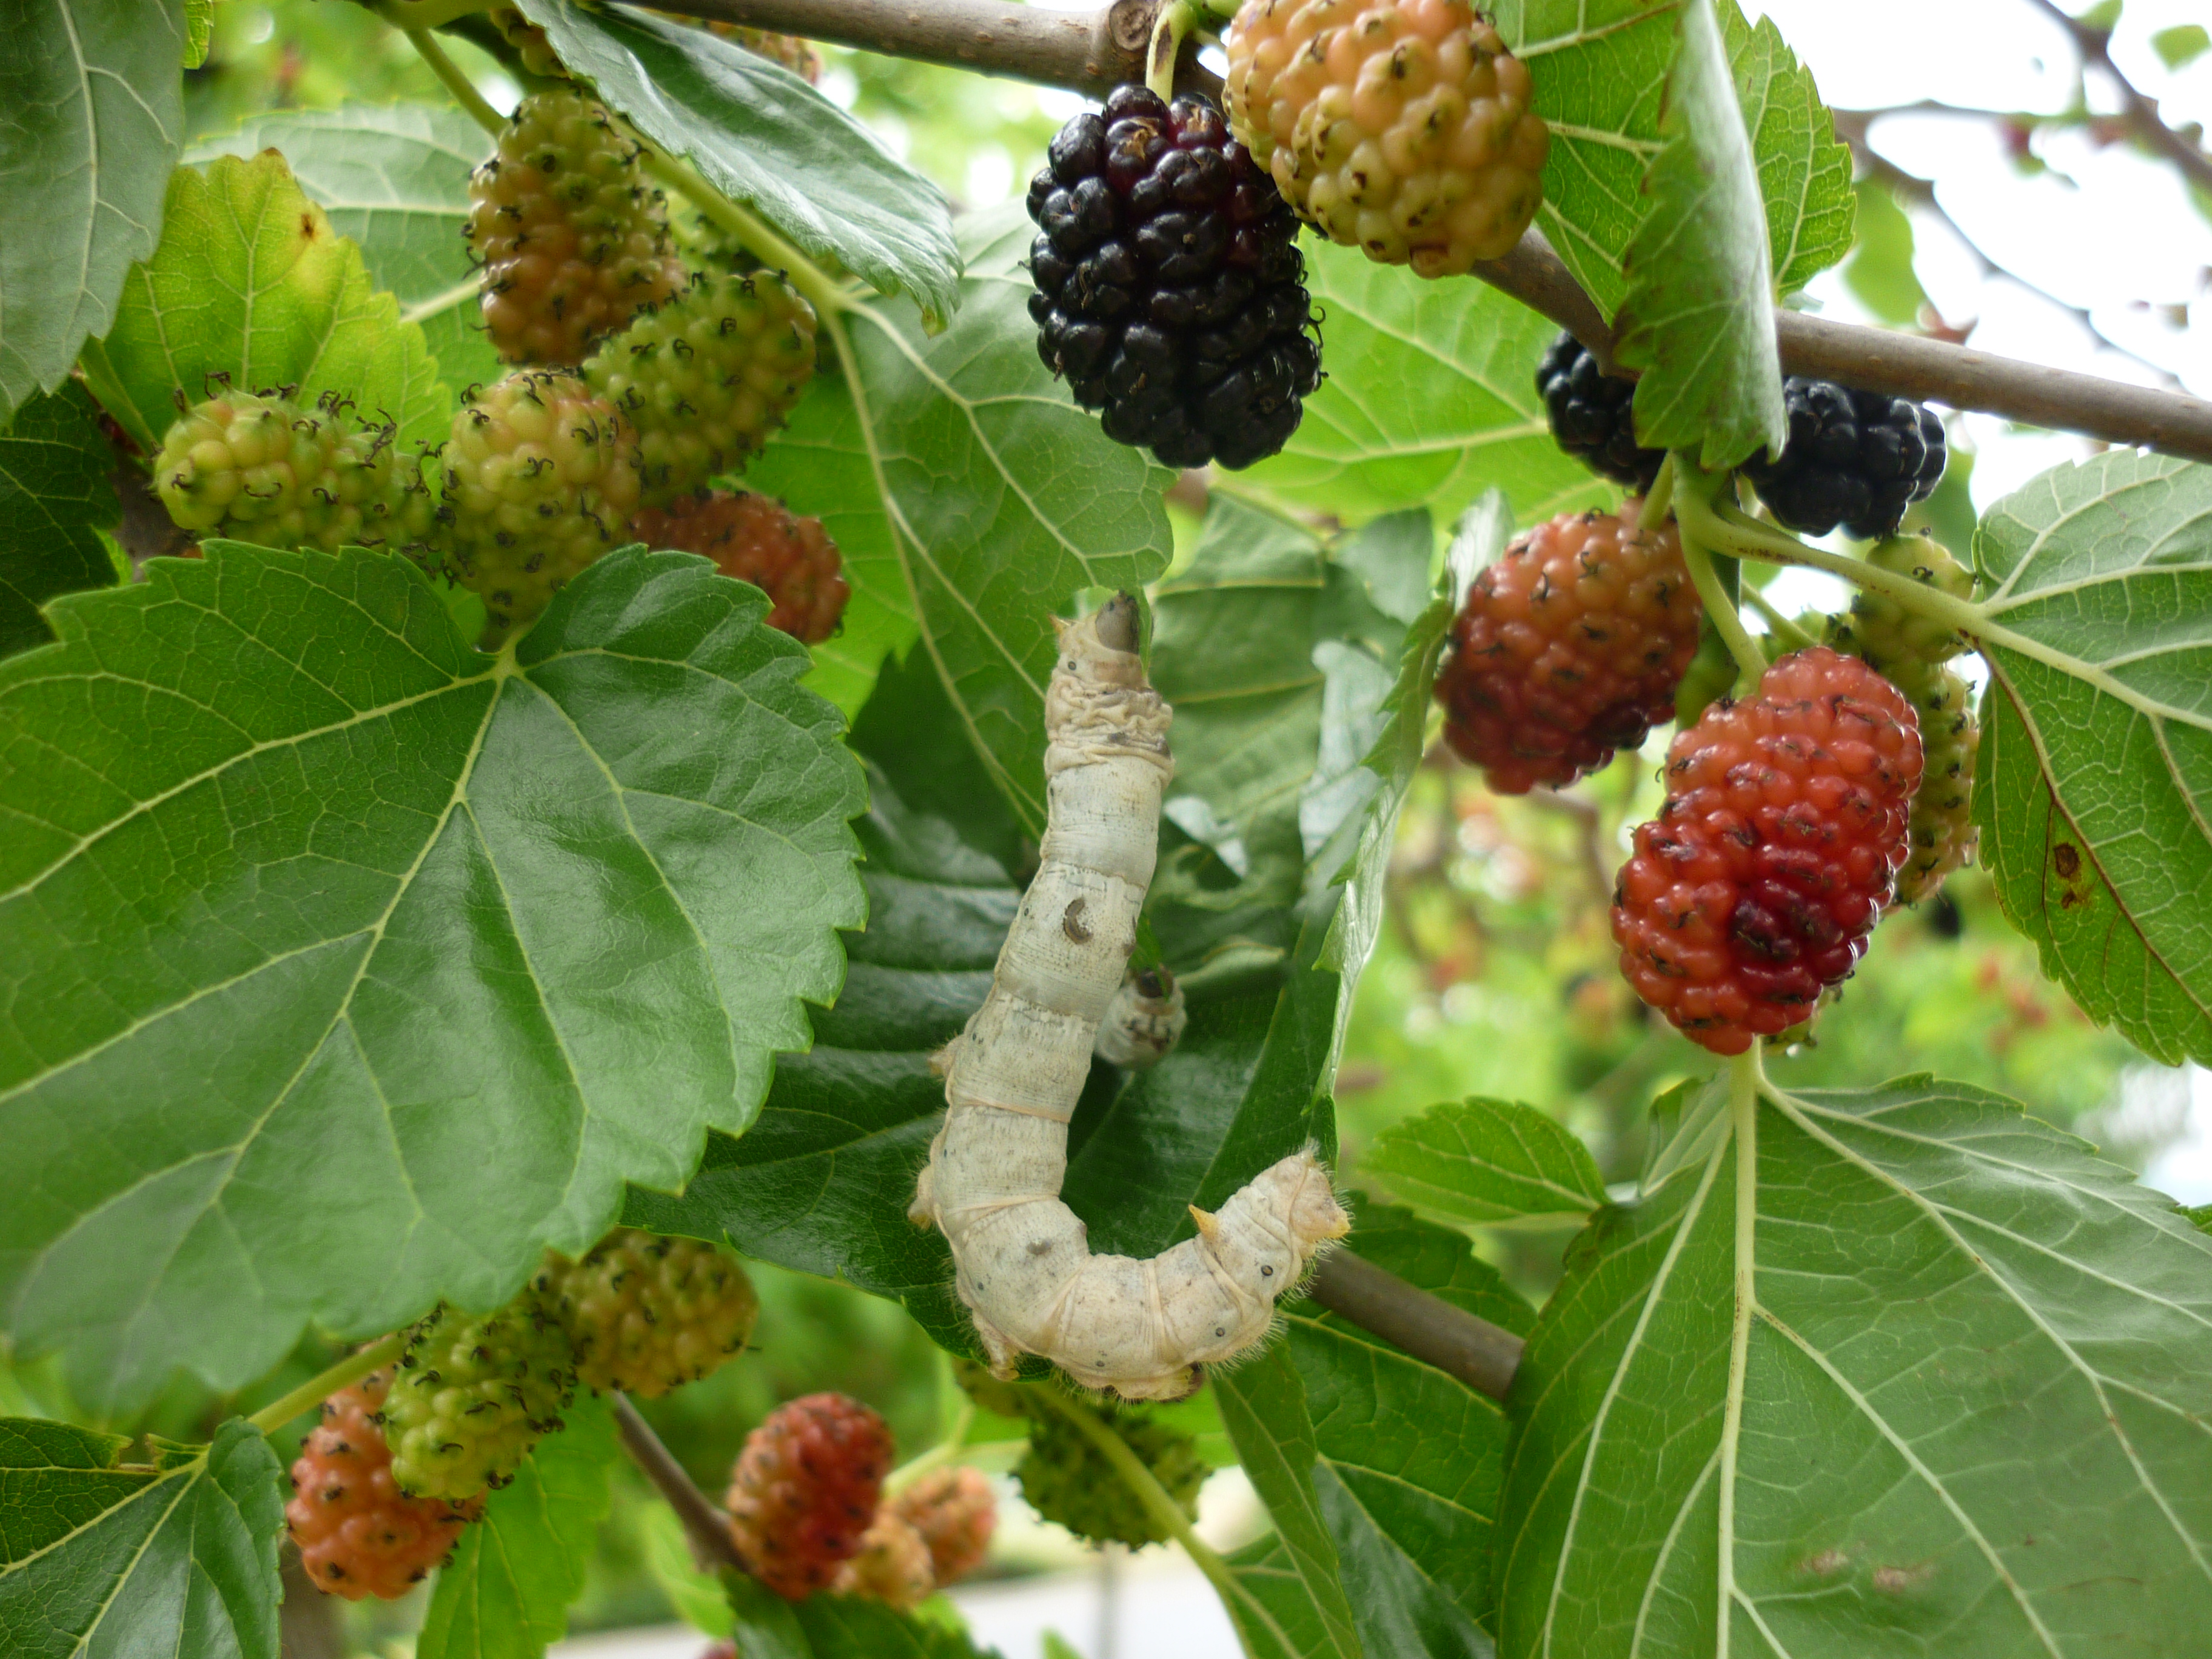 Silkworm_mulberry_tree_zetarra_marugatze_arbolean3.JPG